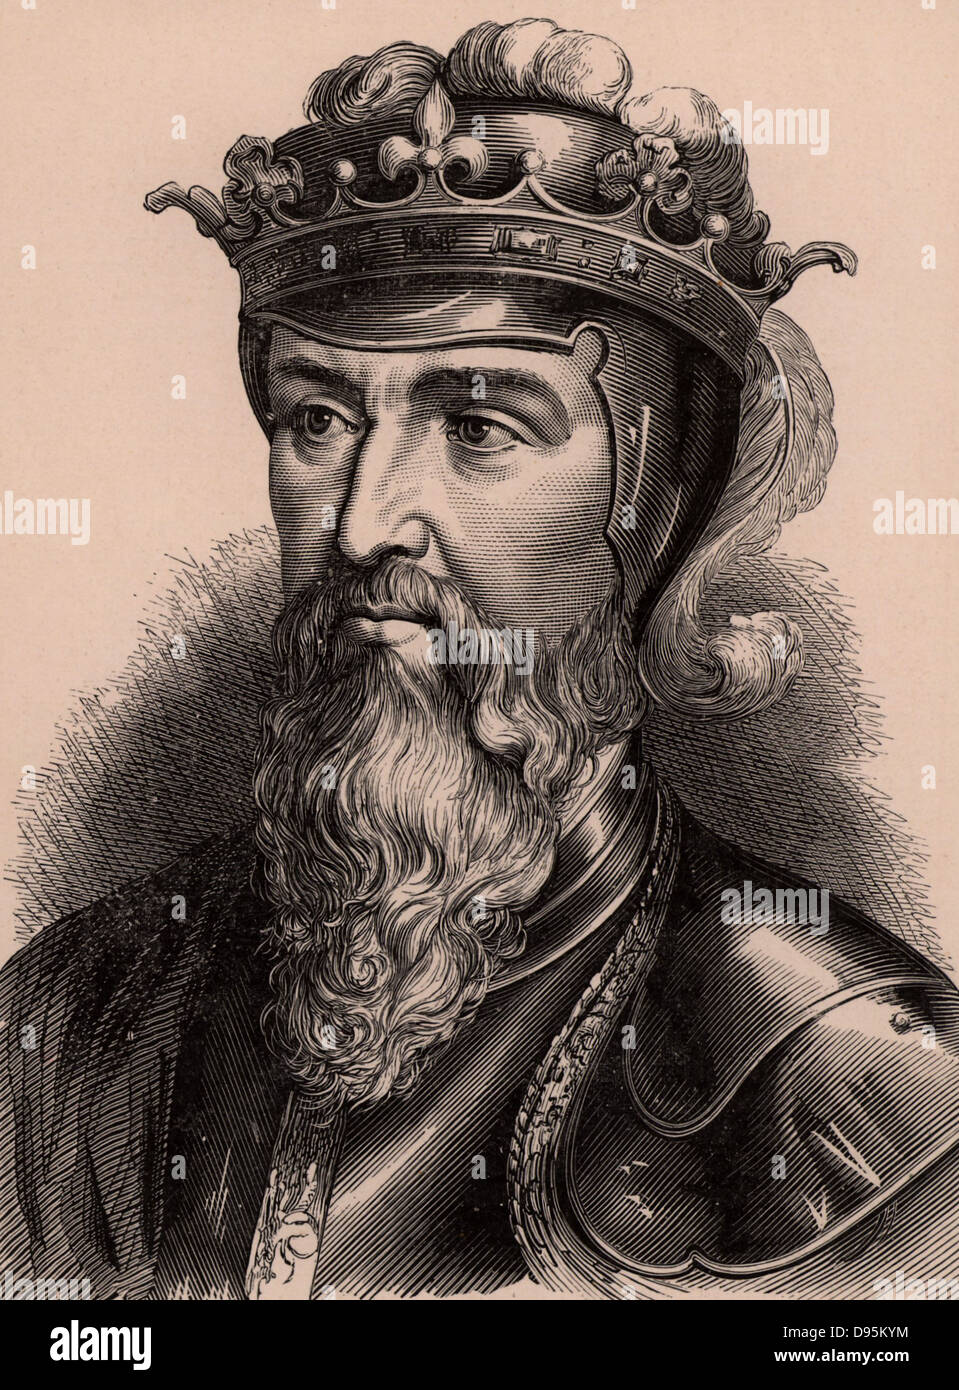 Edward III (1312-1377) König von England ab 1327 auf der Abscheidung von seinem Vater, Edward II. Im Jahre 1340 seinen Anspruch auf den Thron von Frankreich führte zu den Hundertjährigen Krieg. Ein Mitglied der Dynastie Plantagenet. Holzstich c 1900. Stockfoto